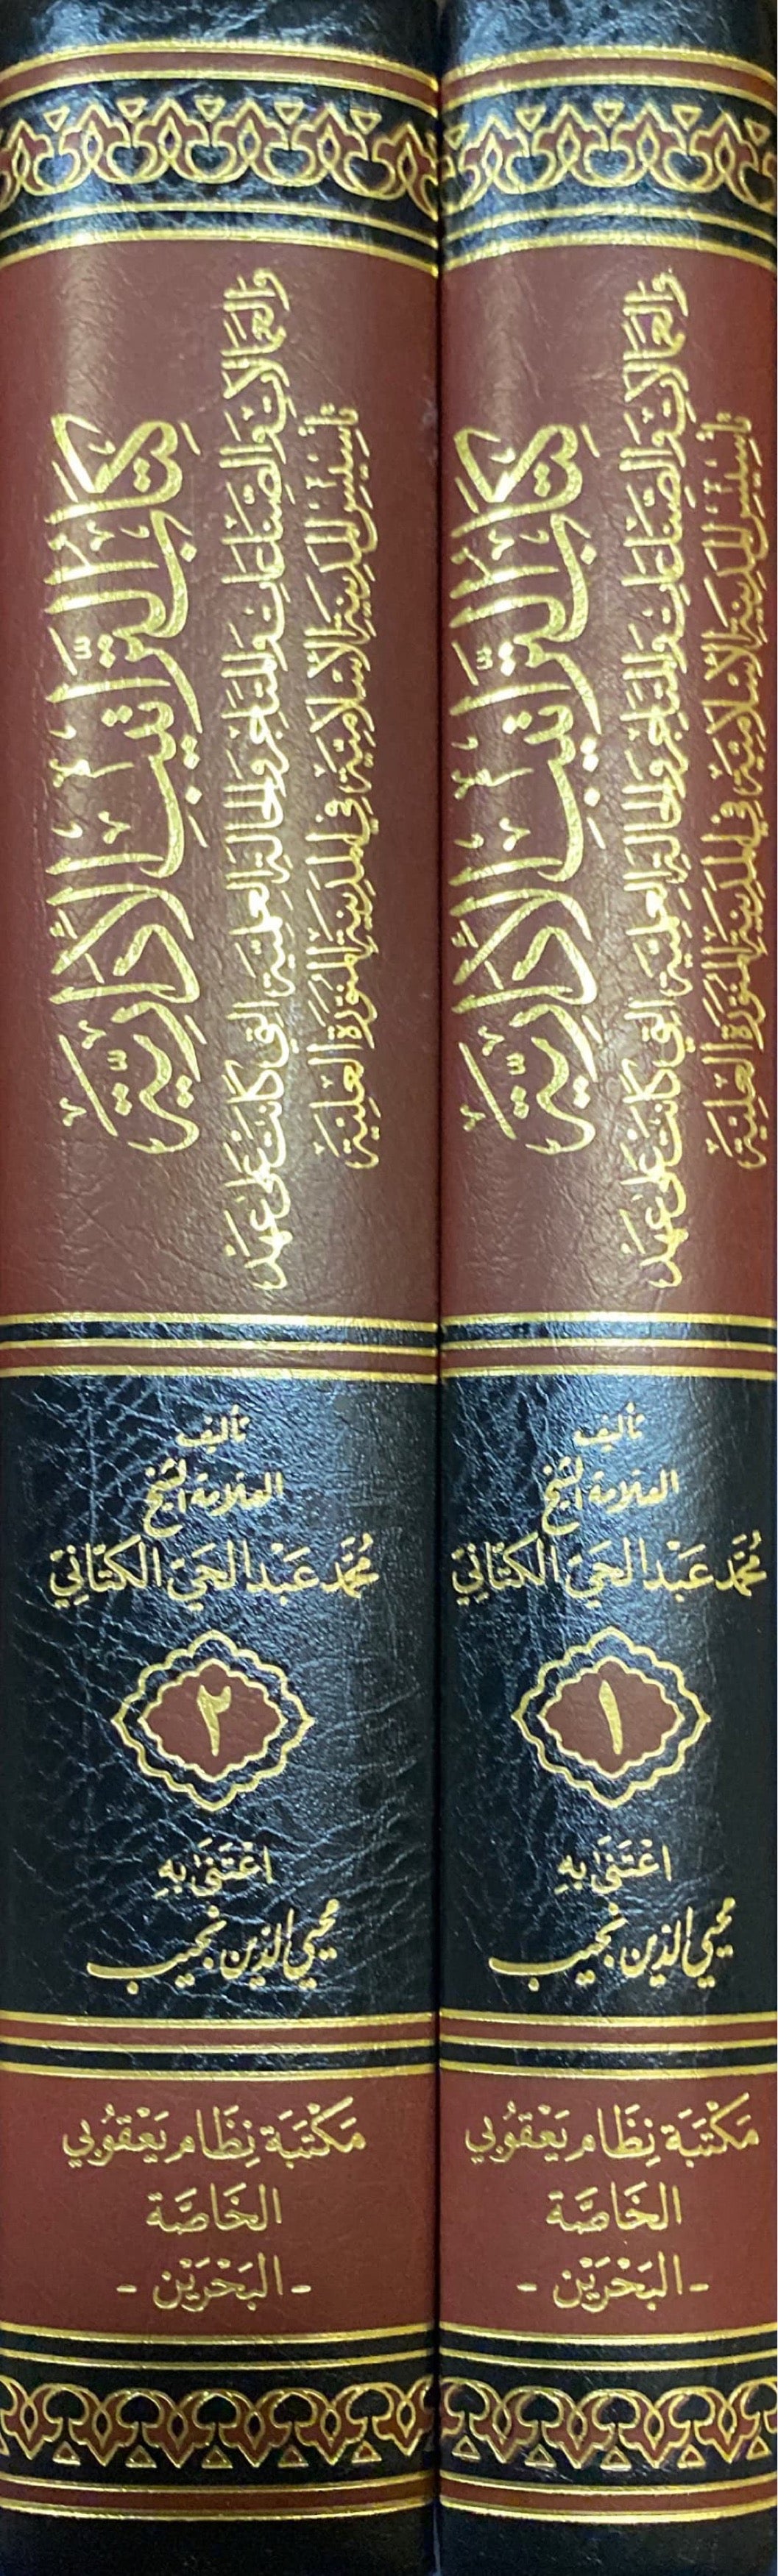 كتاب التراتيب الإدارية    Kitab At Traatib Al Idaria (2 Vol)